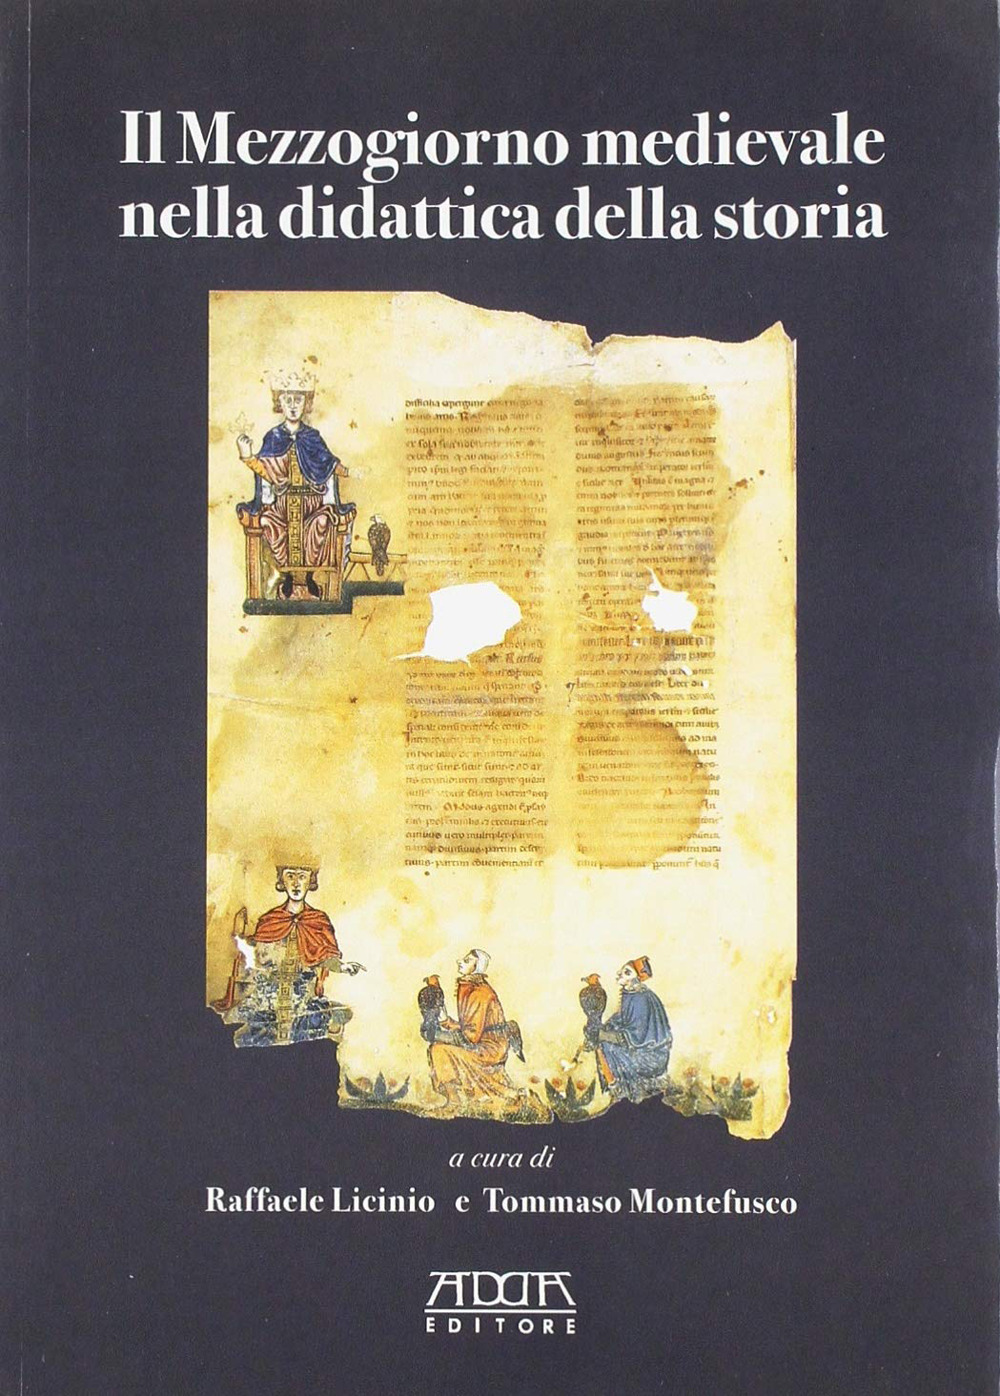 Il Mezzogiorno medievale nella didattica della storia